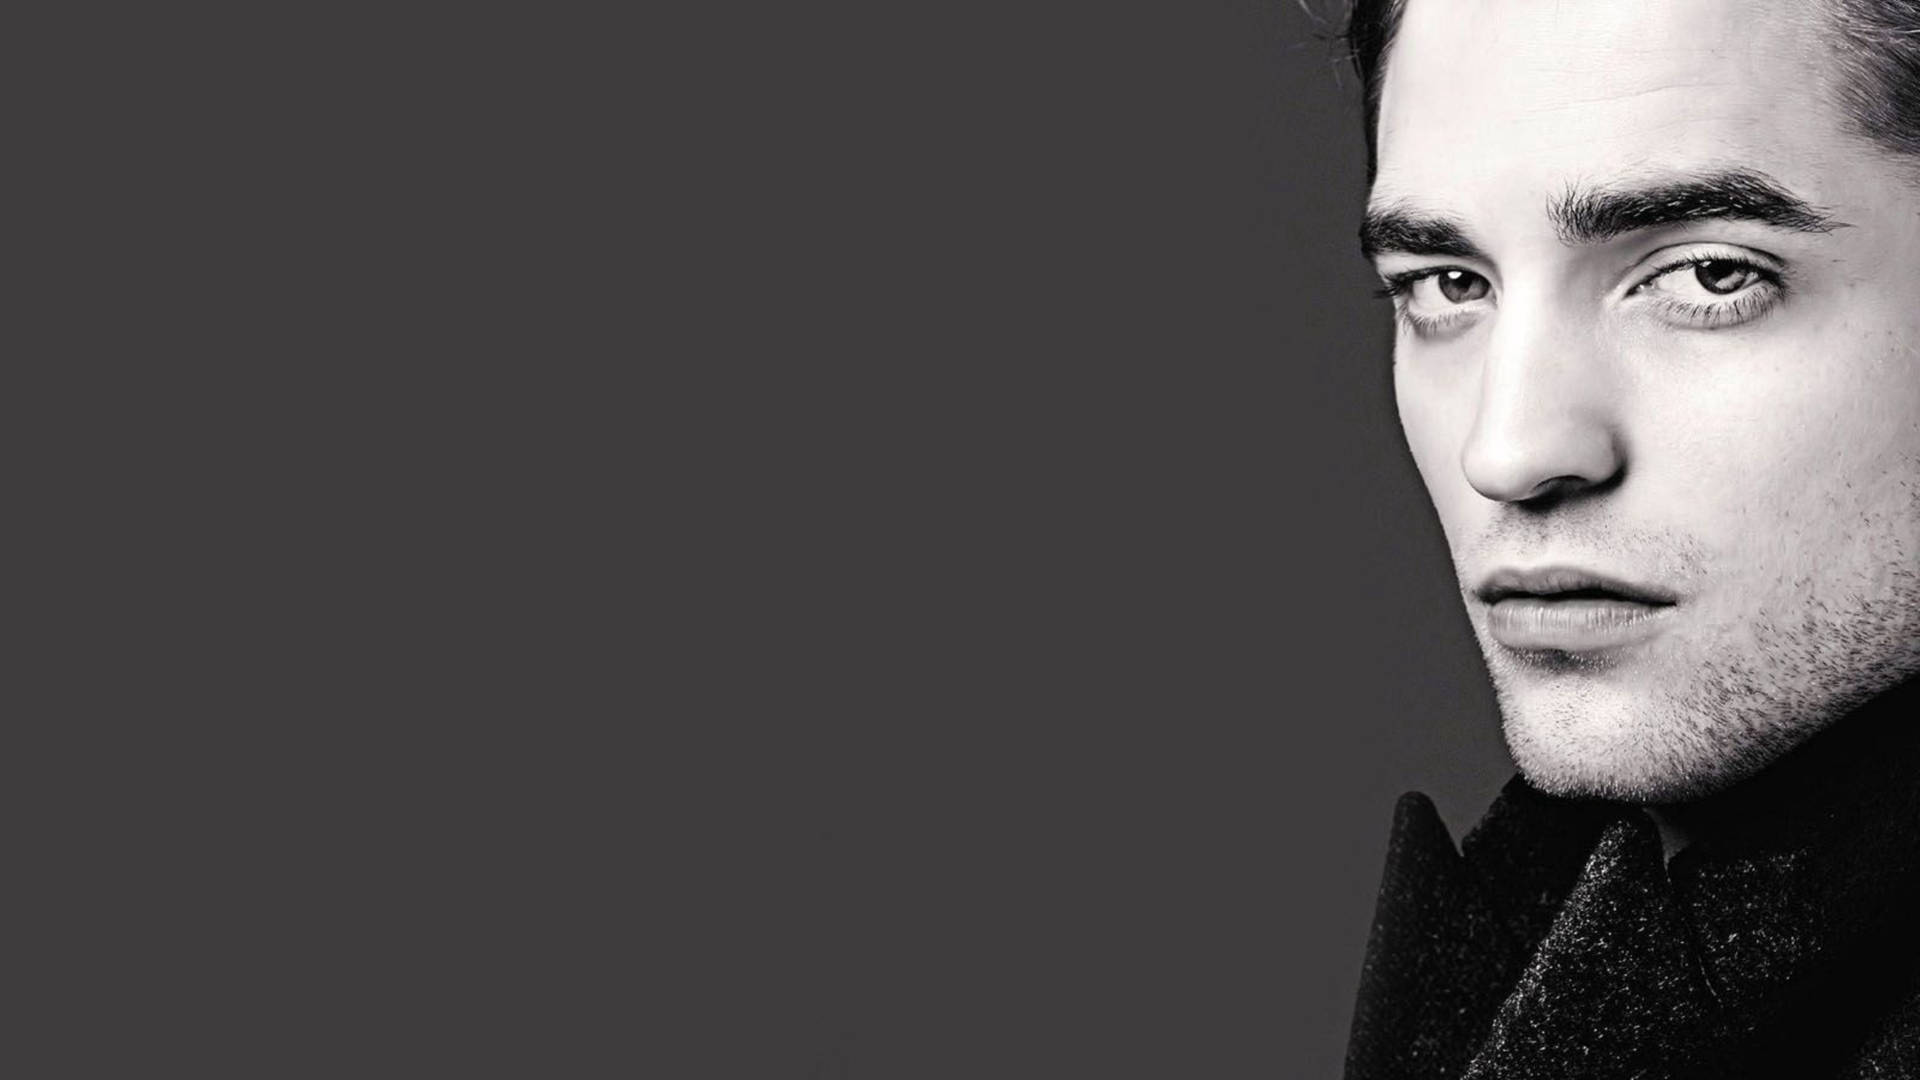 Robert Pattinson Minimalist